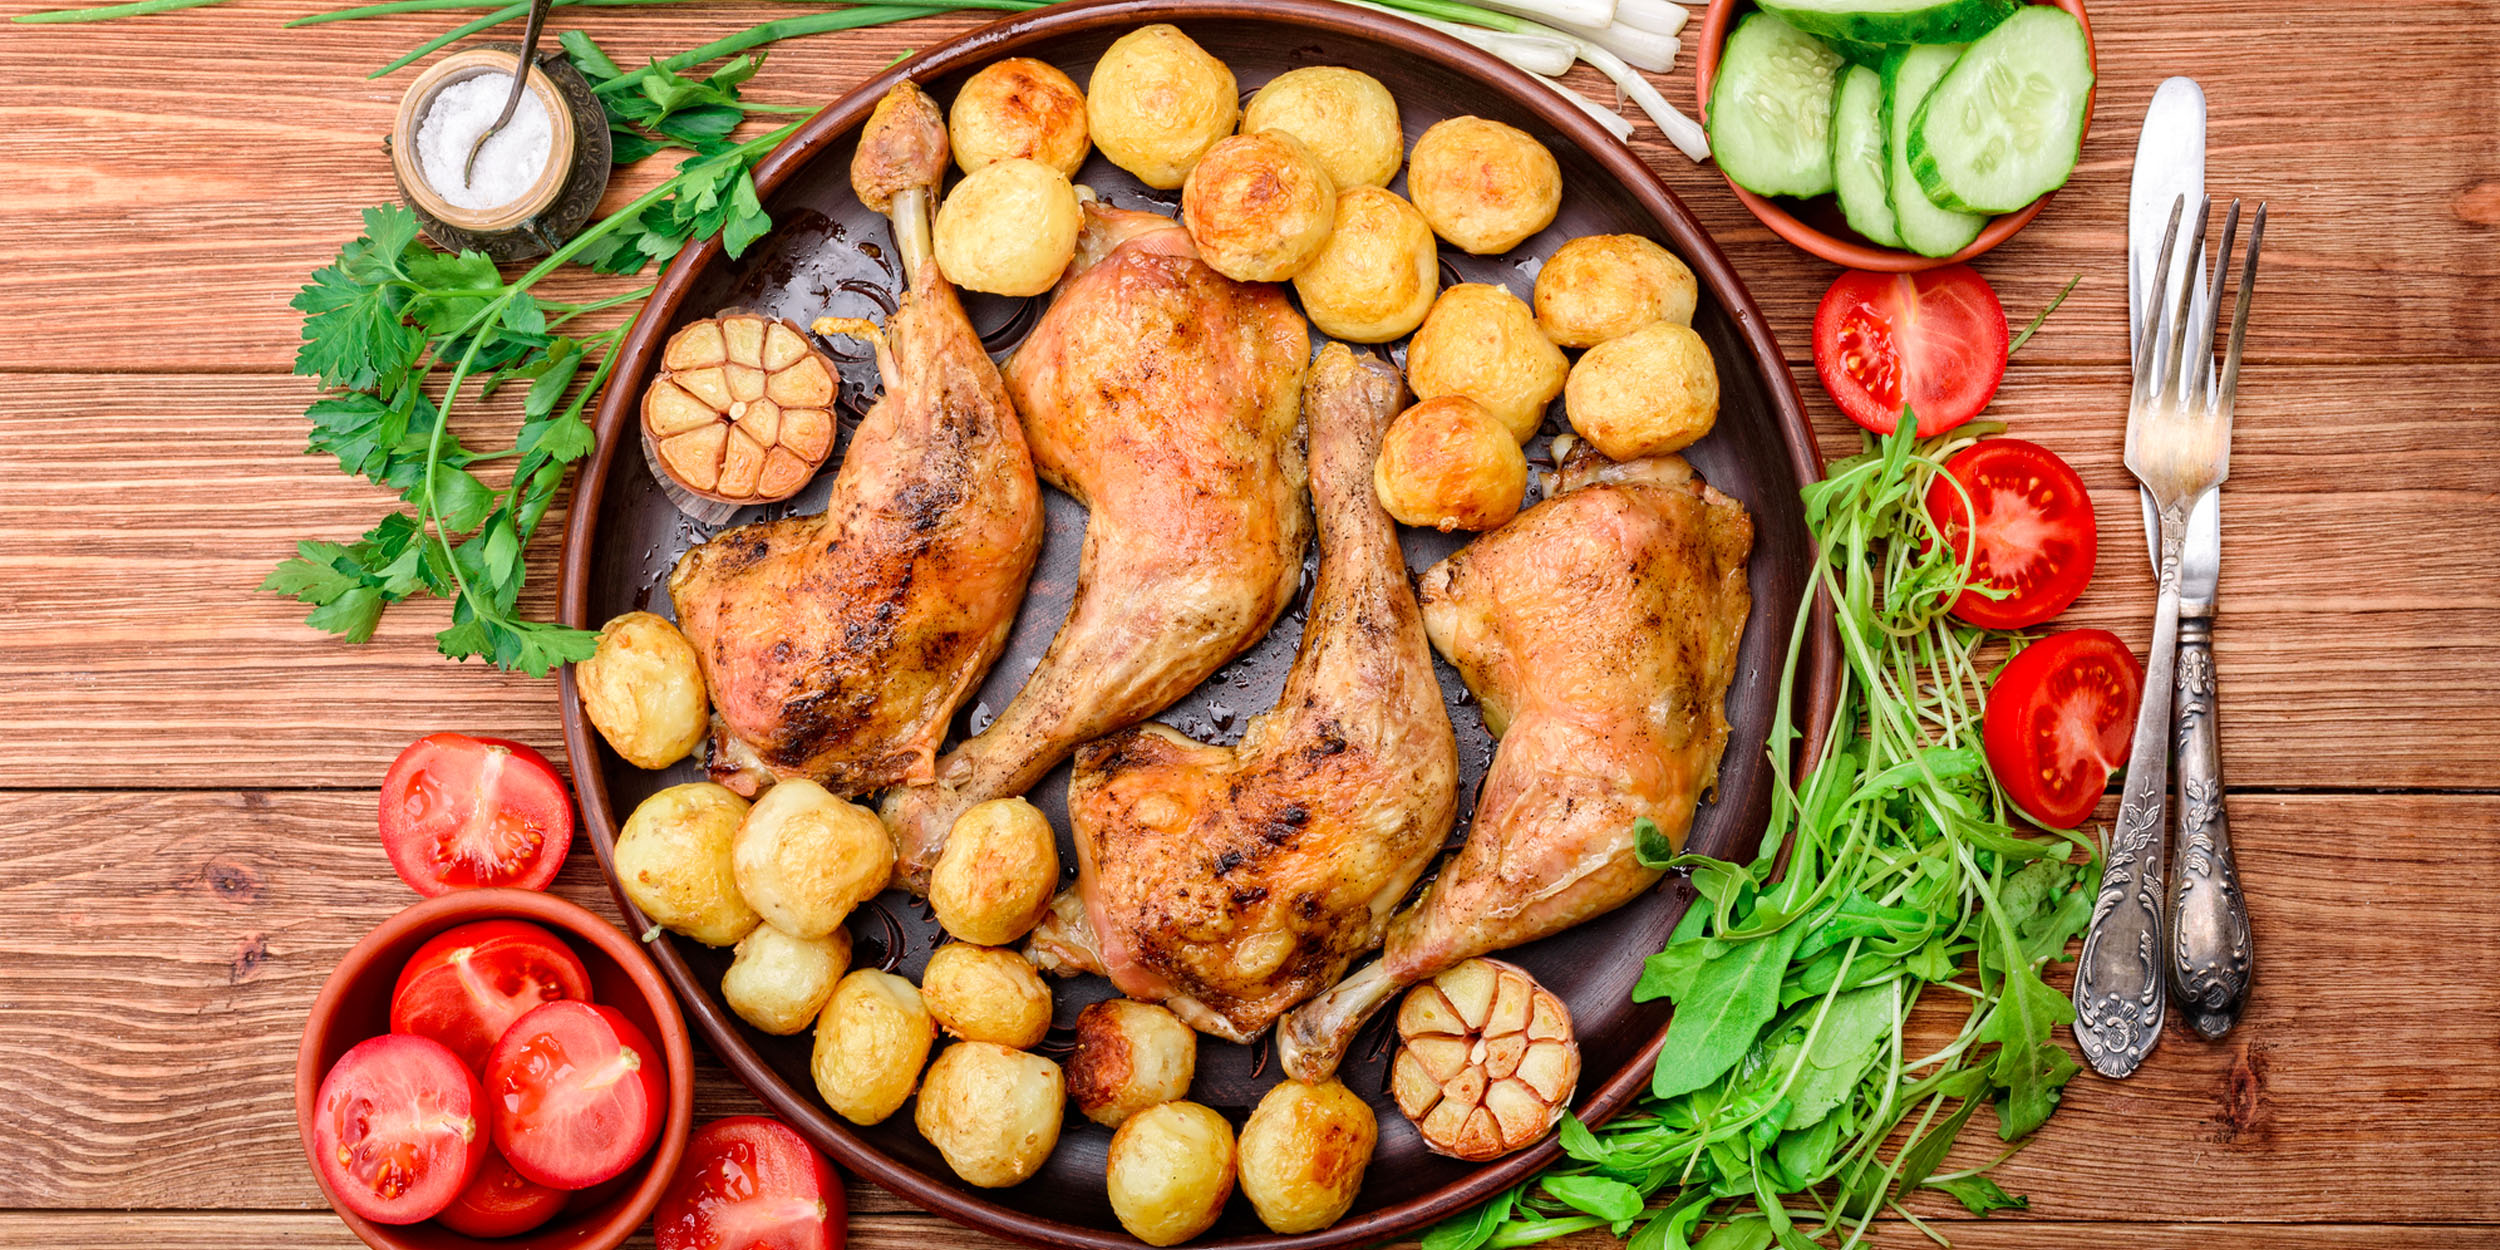 Рецепт панцанеллы с курицей от Гордона Рамзи: приготовьте вкусный и здоровый обед!